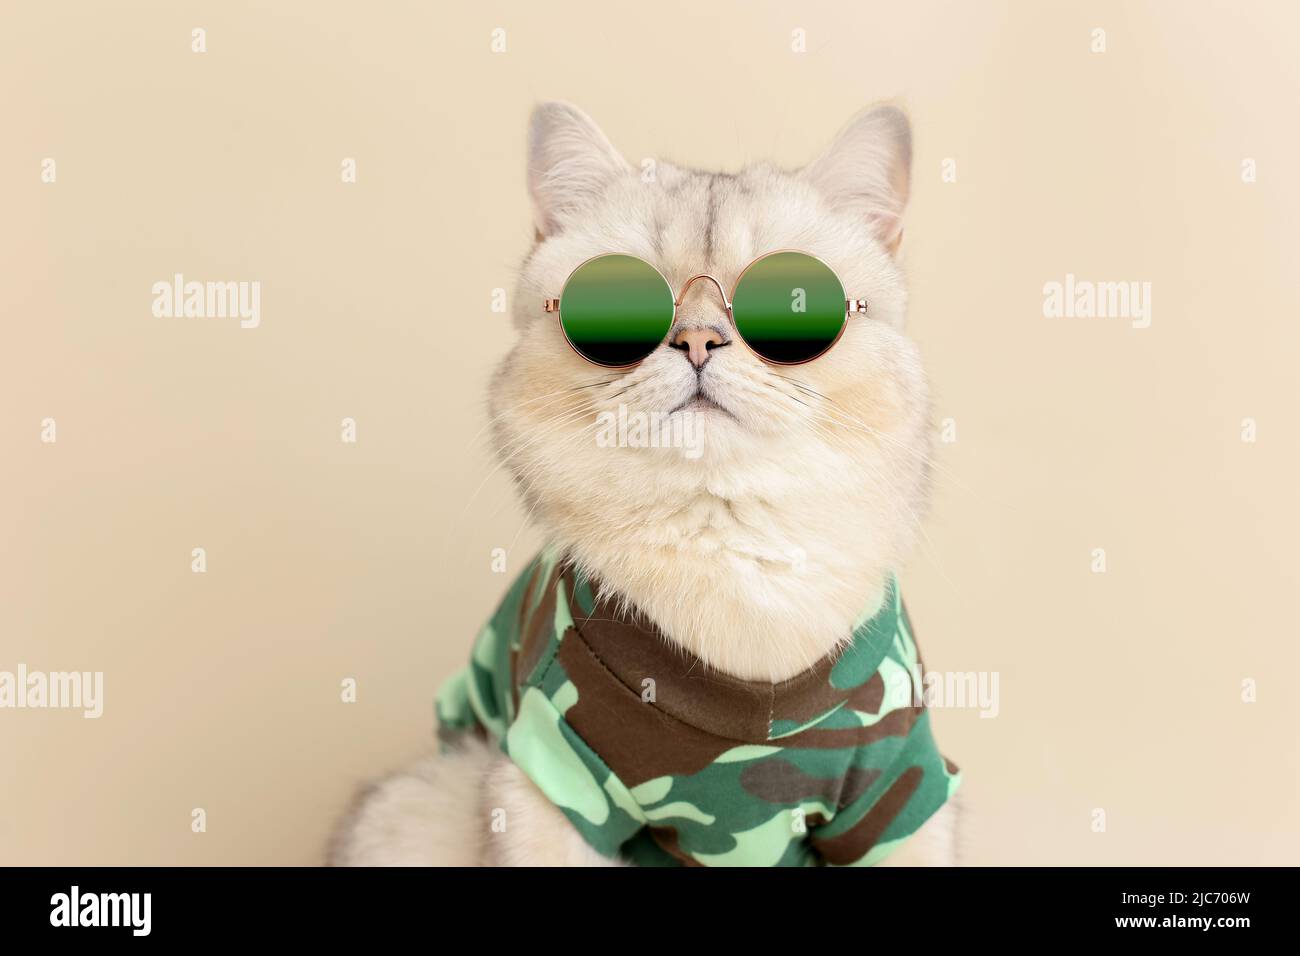 Carino gatto elegante in occhiali da sole e una T-shirt in stile militare, su sfondo beige Foto Stock